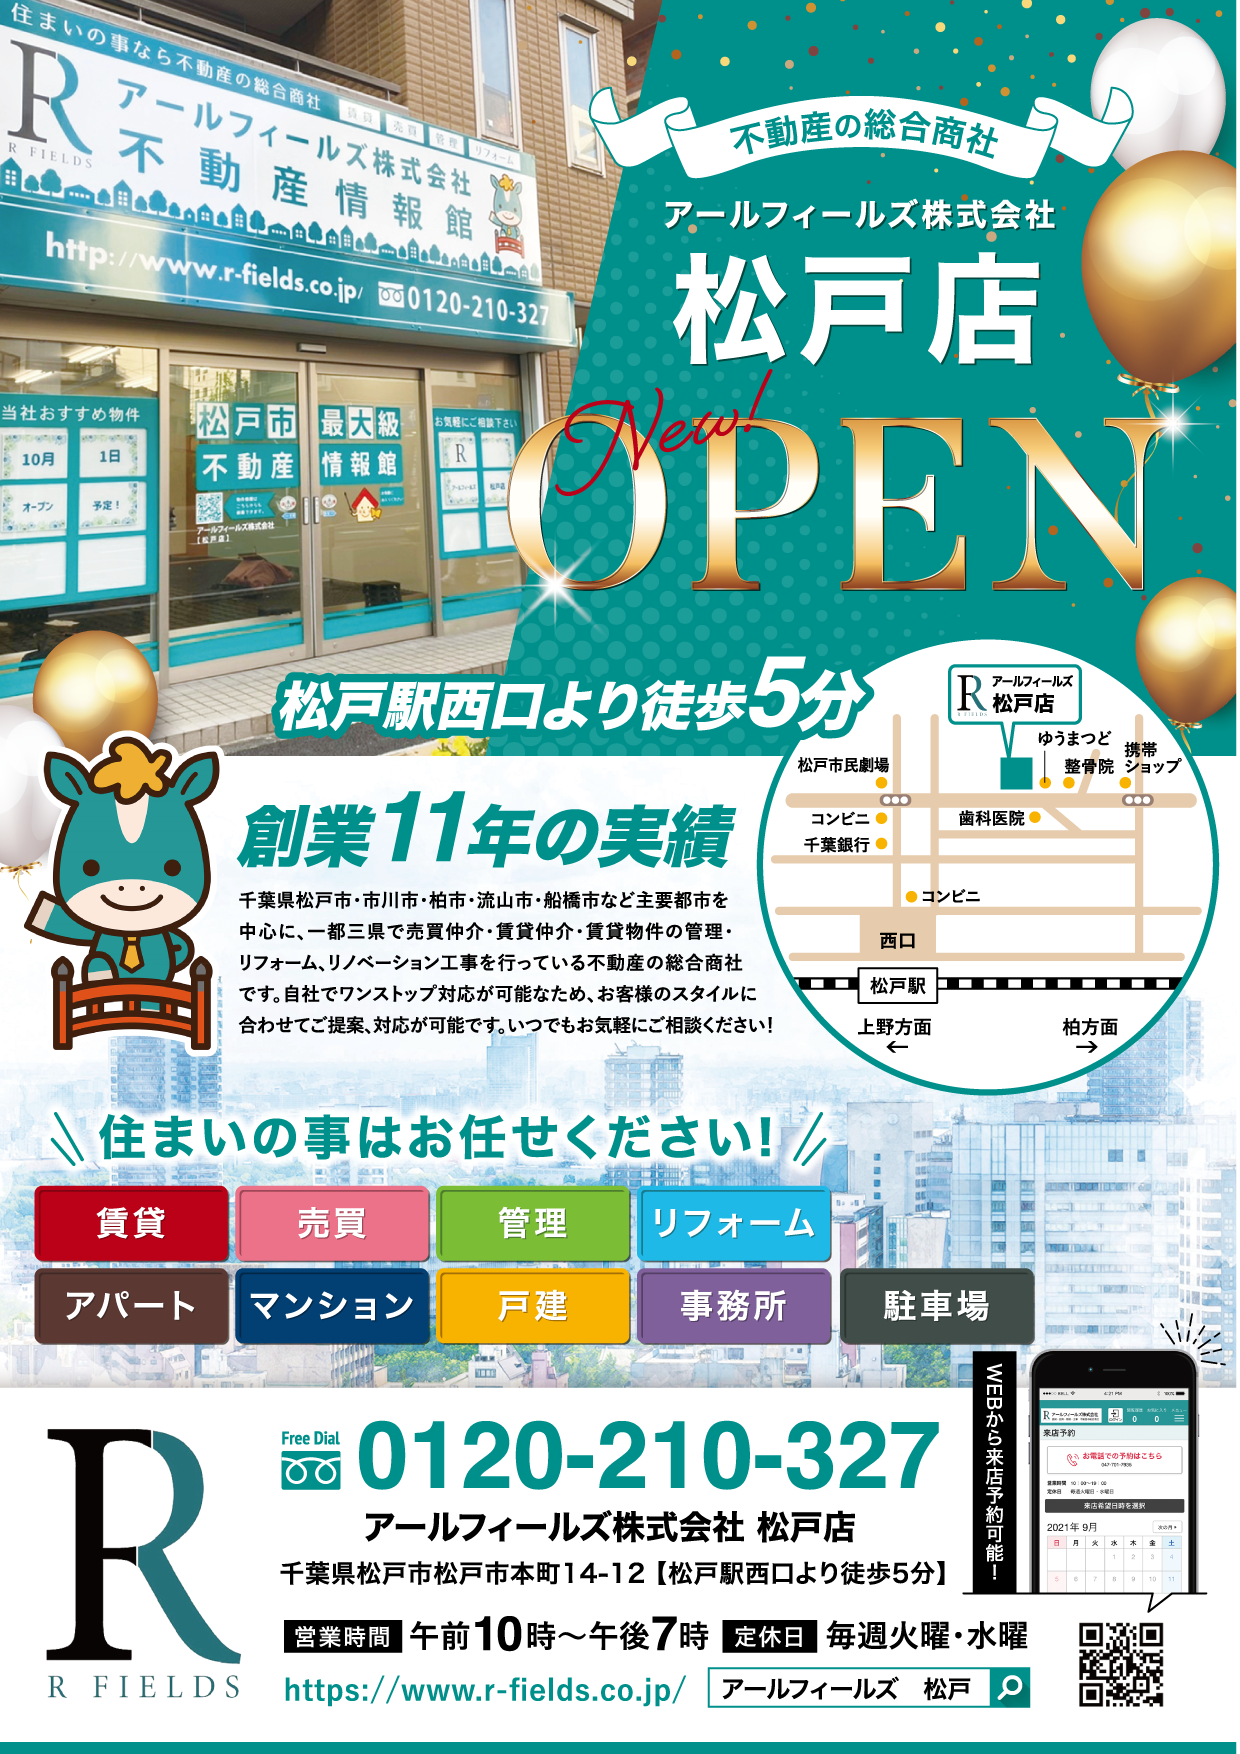 アールフィールズ株式会社 |松戸店新規オープンのお知らせ